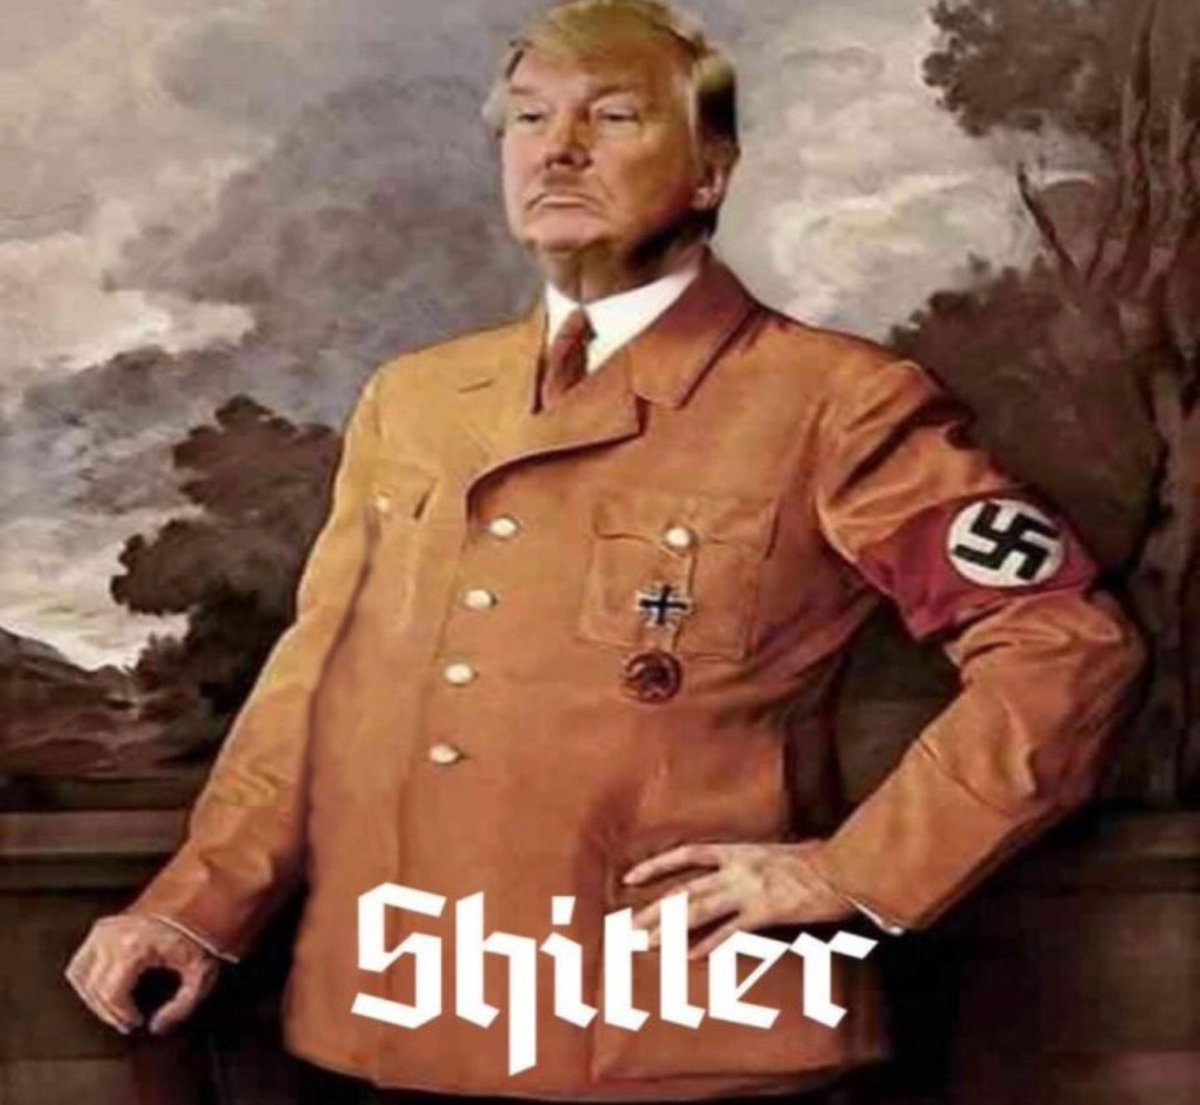 Dictator #TrumpIsNotFitToBePresident